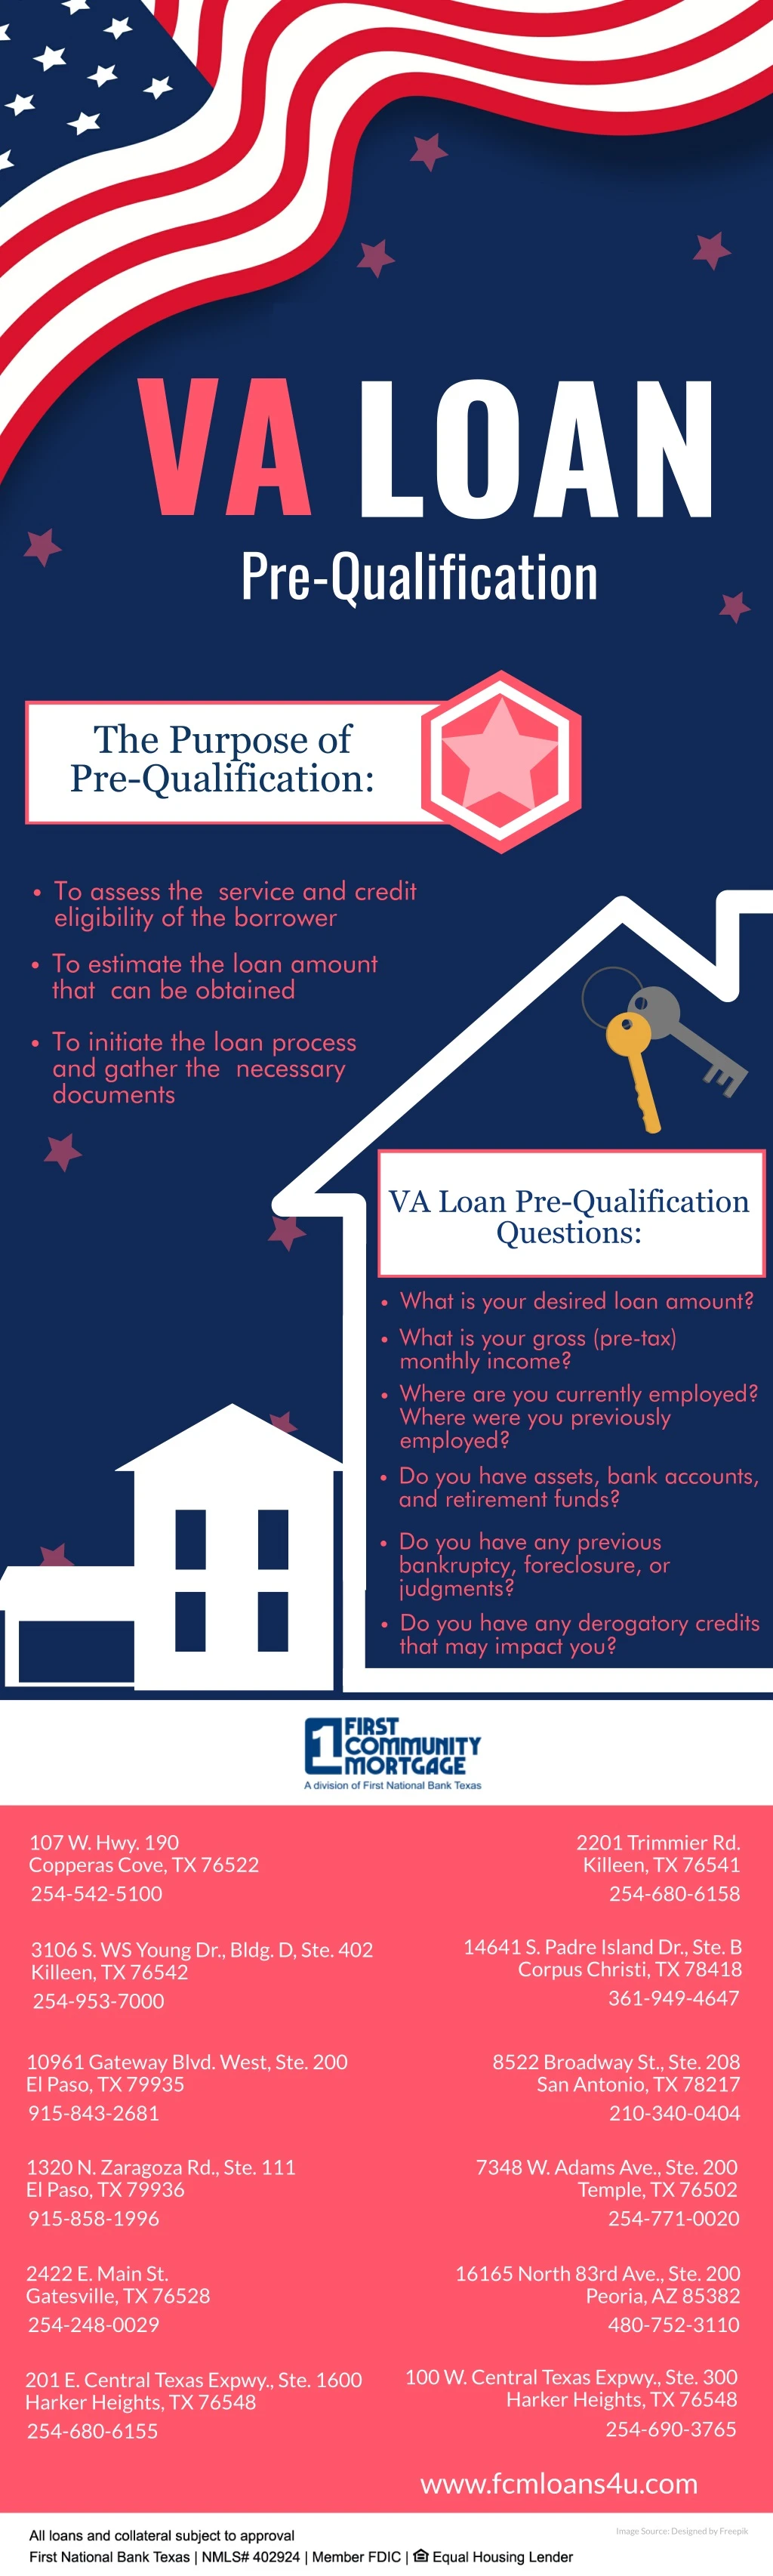 va loan pre qualification